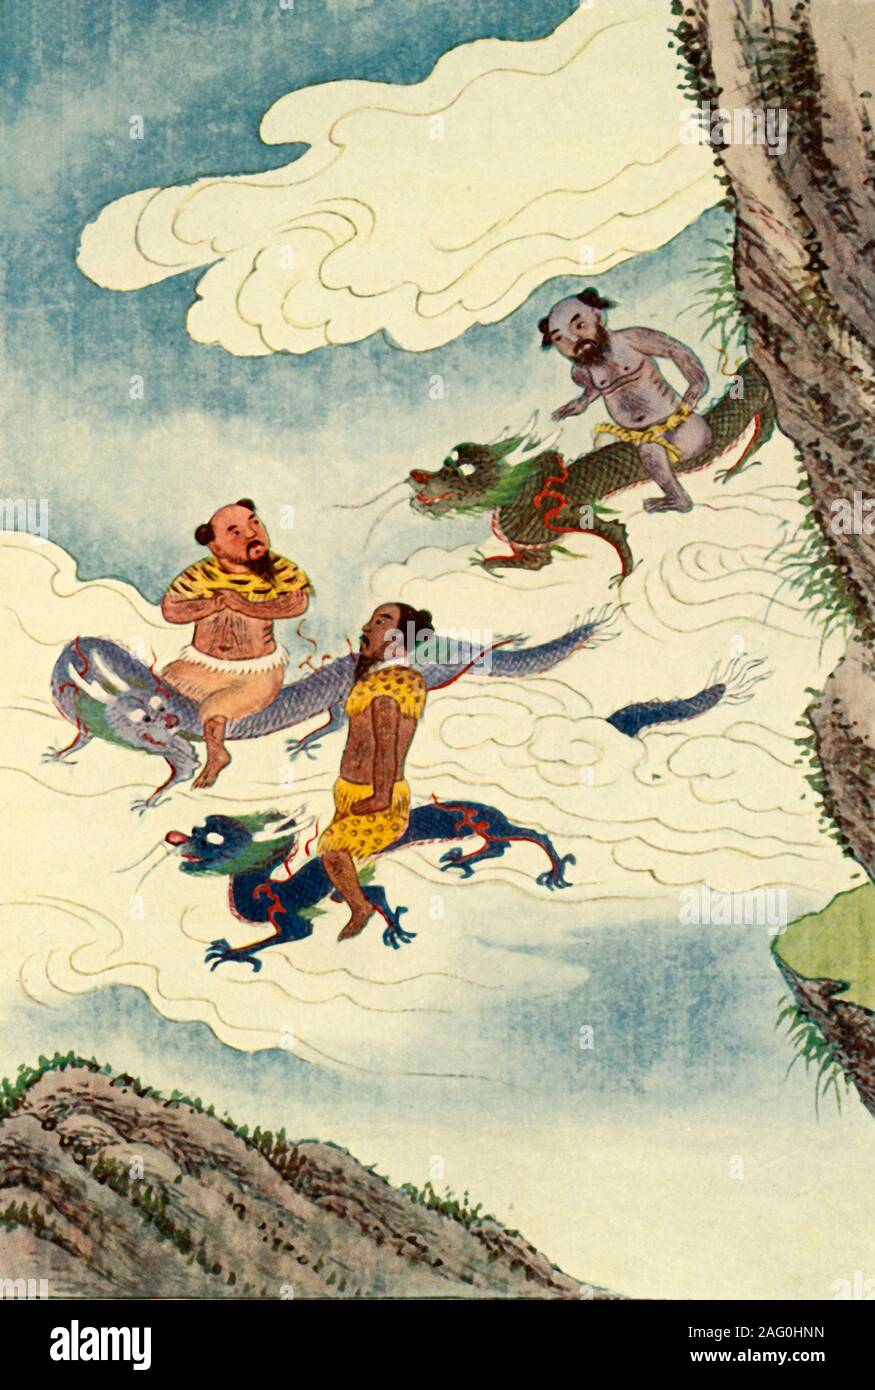 Il drago cinese è una creatura mitica cinese, raffigurata come una creatura  lunga, scalata, simile a serpente con quattro artigli. Molte immagini dei  draghi orientali mostrano una perla fiammeggiante sotto il loro